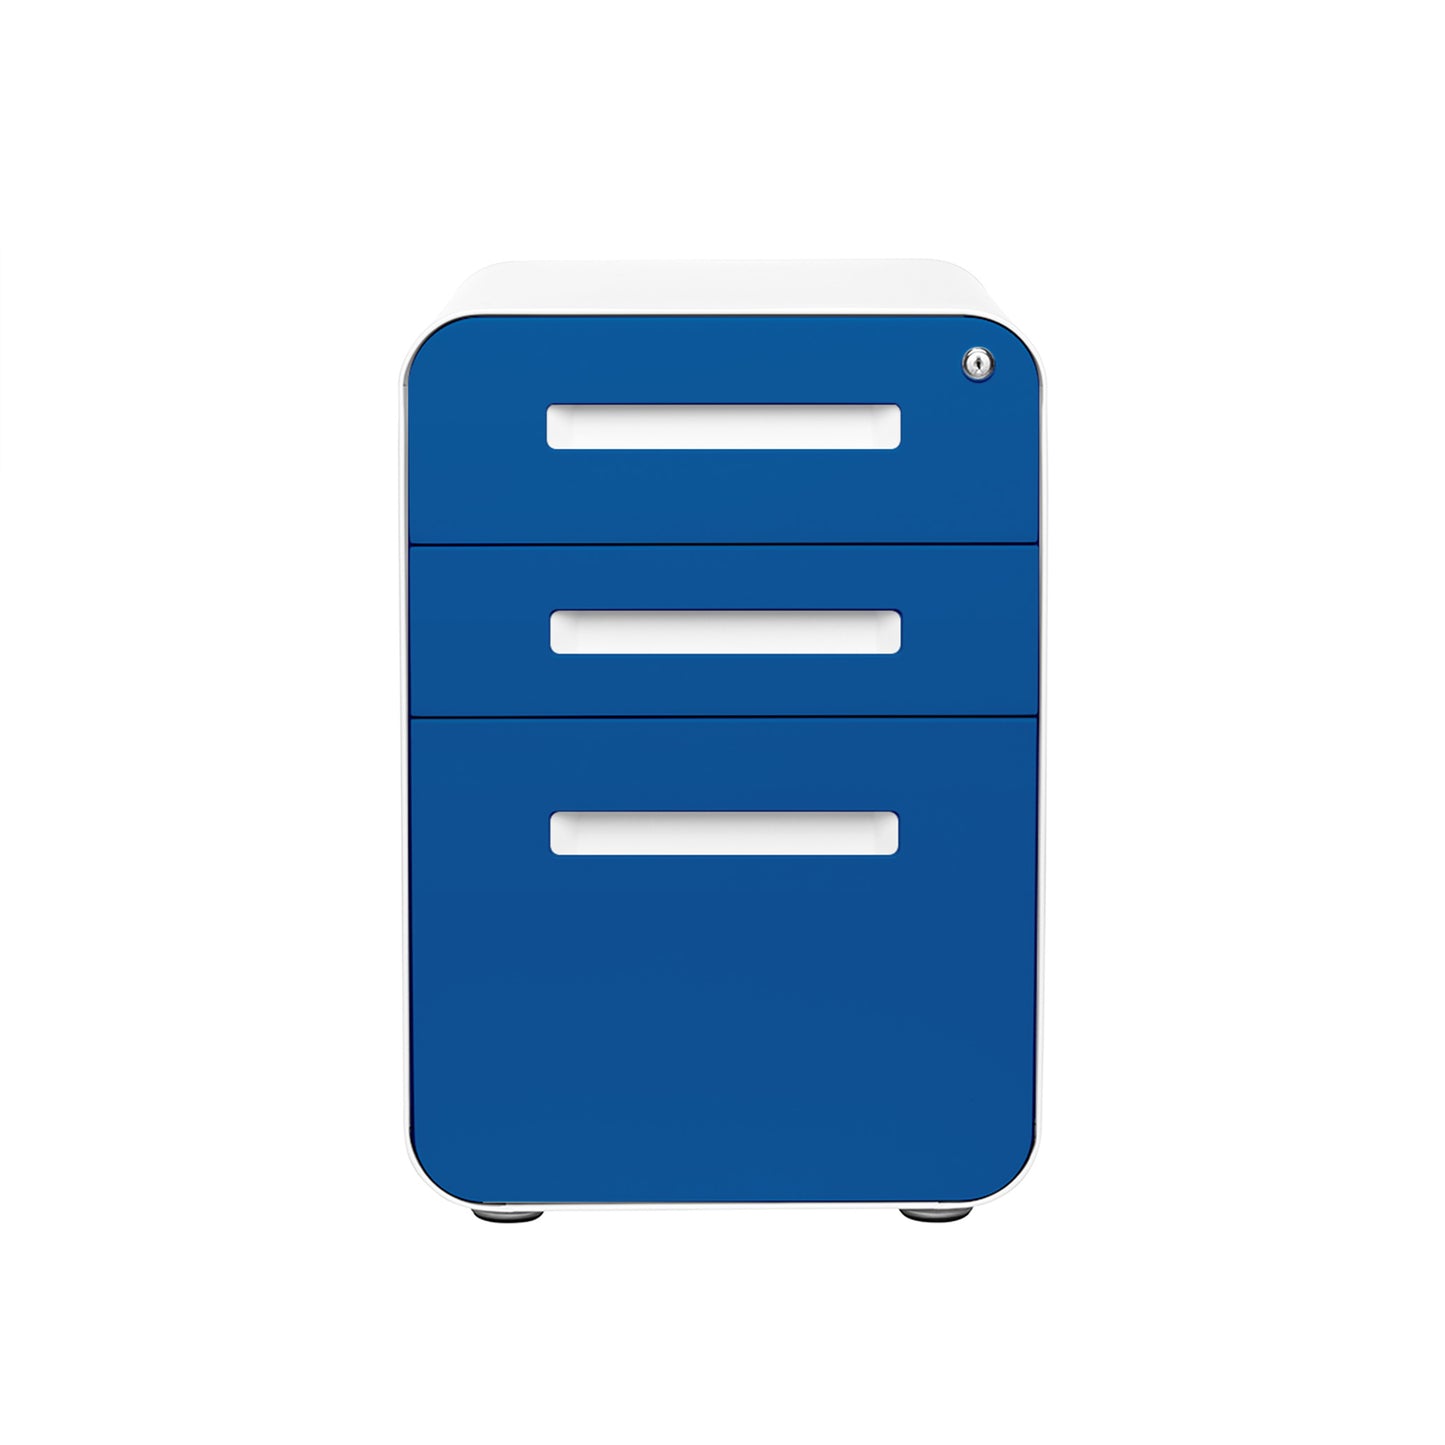 Stockpile Curve File Cabinet (Blue Faceplate)